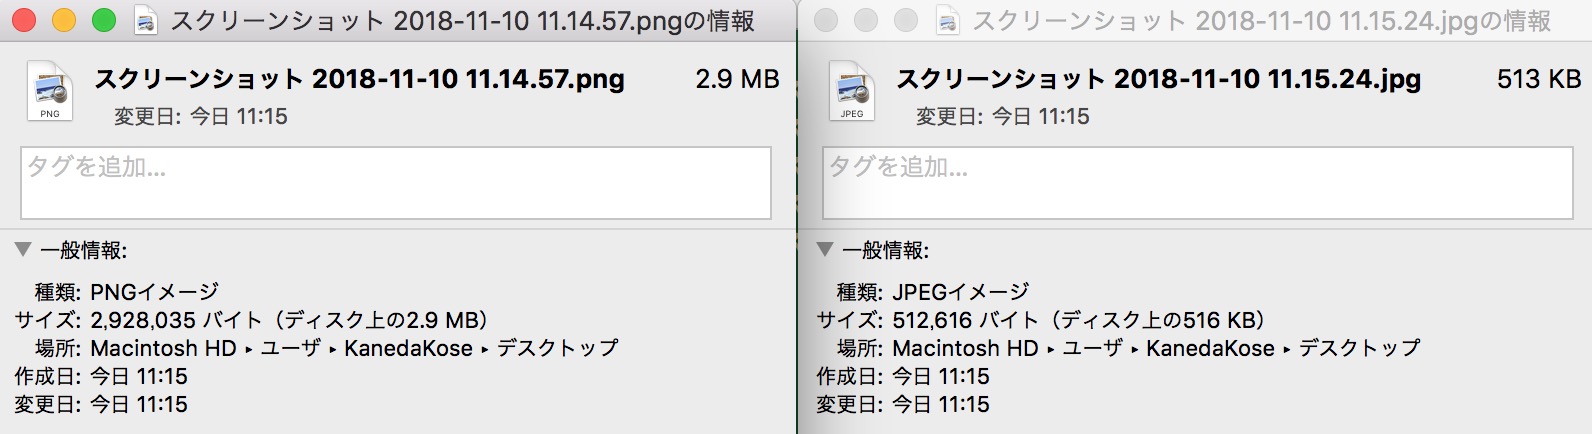 macのスクショ保存形式をjpgに変更